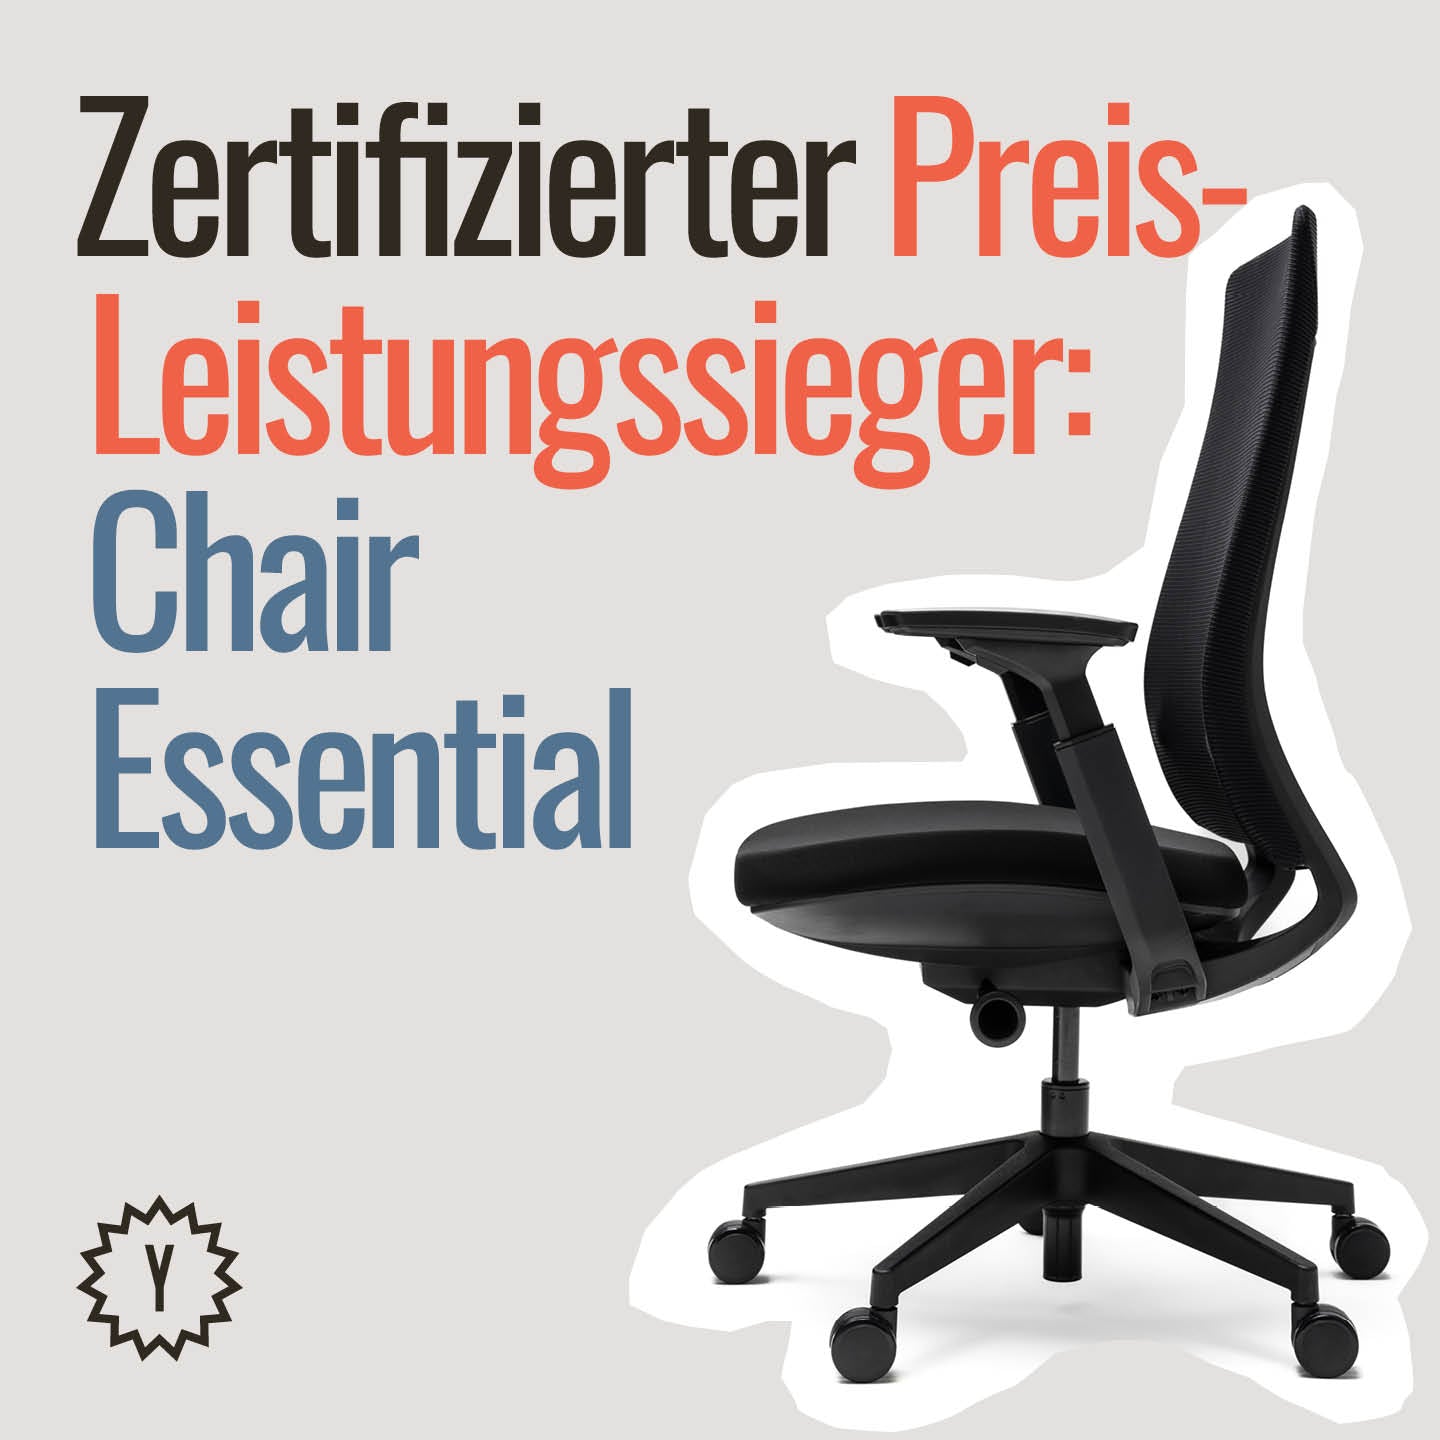 Zertifizierter Preis-Leistungssieger: Chair Essential von Yaasa